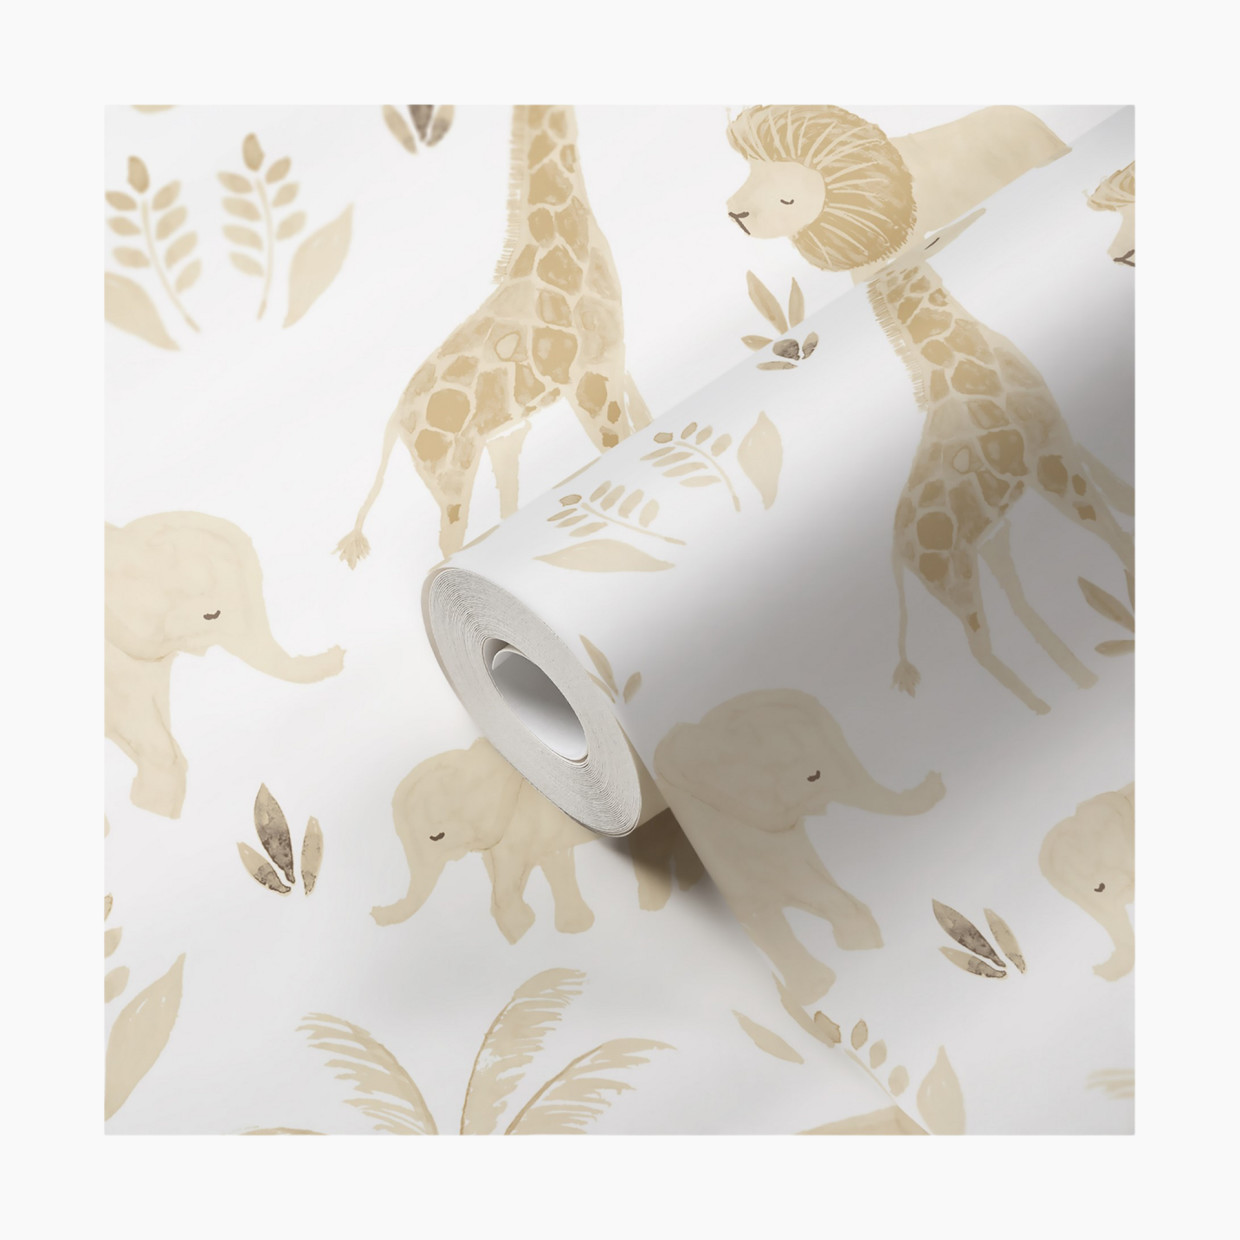 Crane Baby Non-Woven Wallpaper - Kendi Animals.